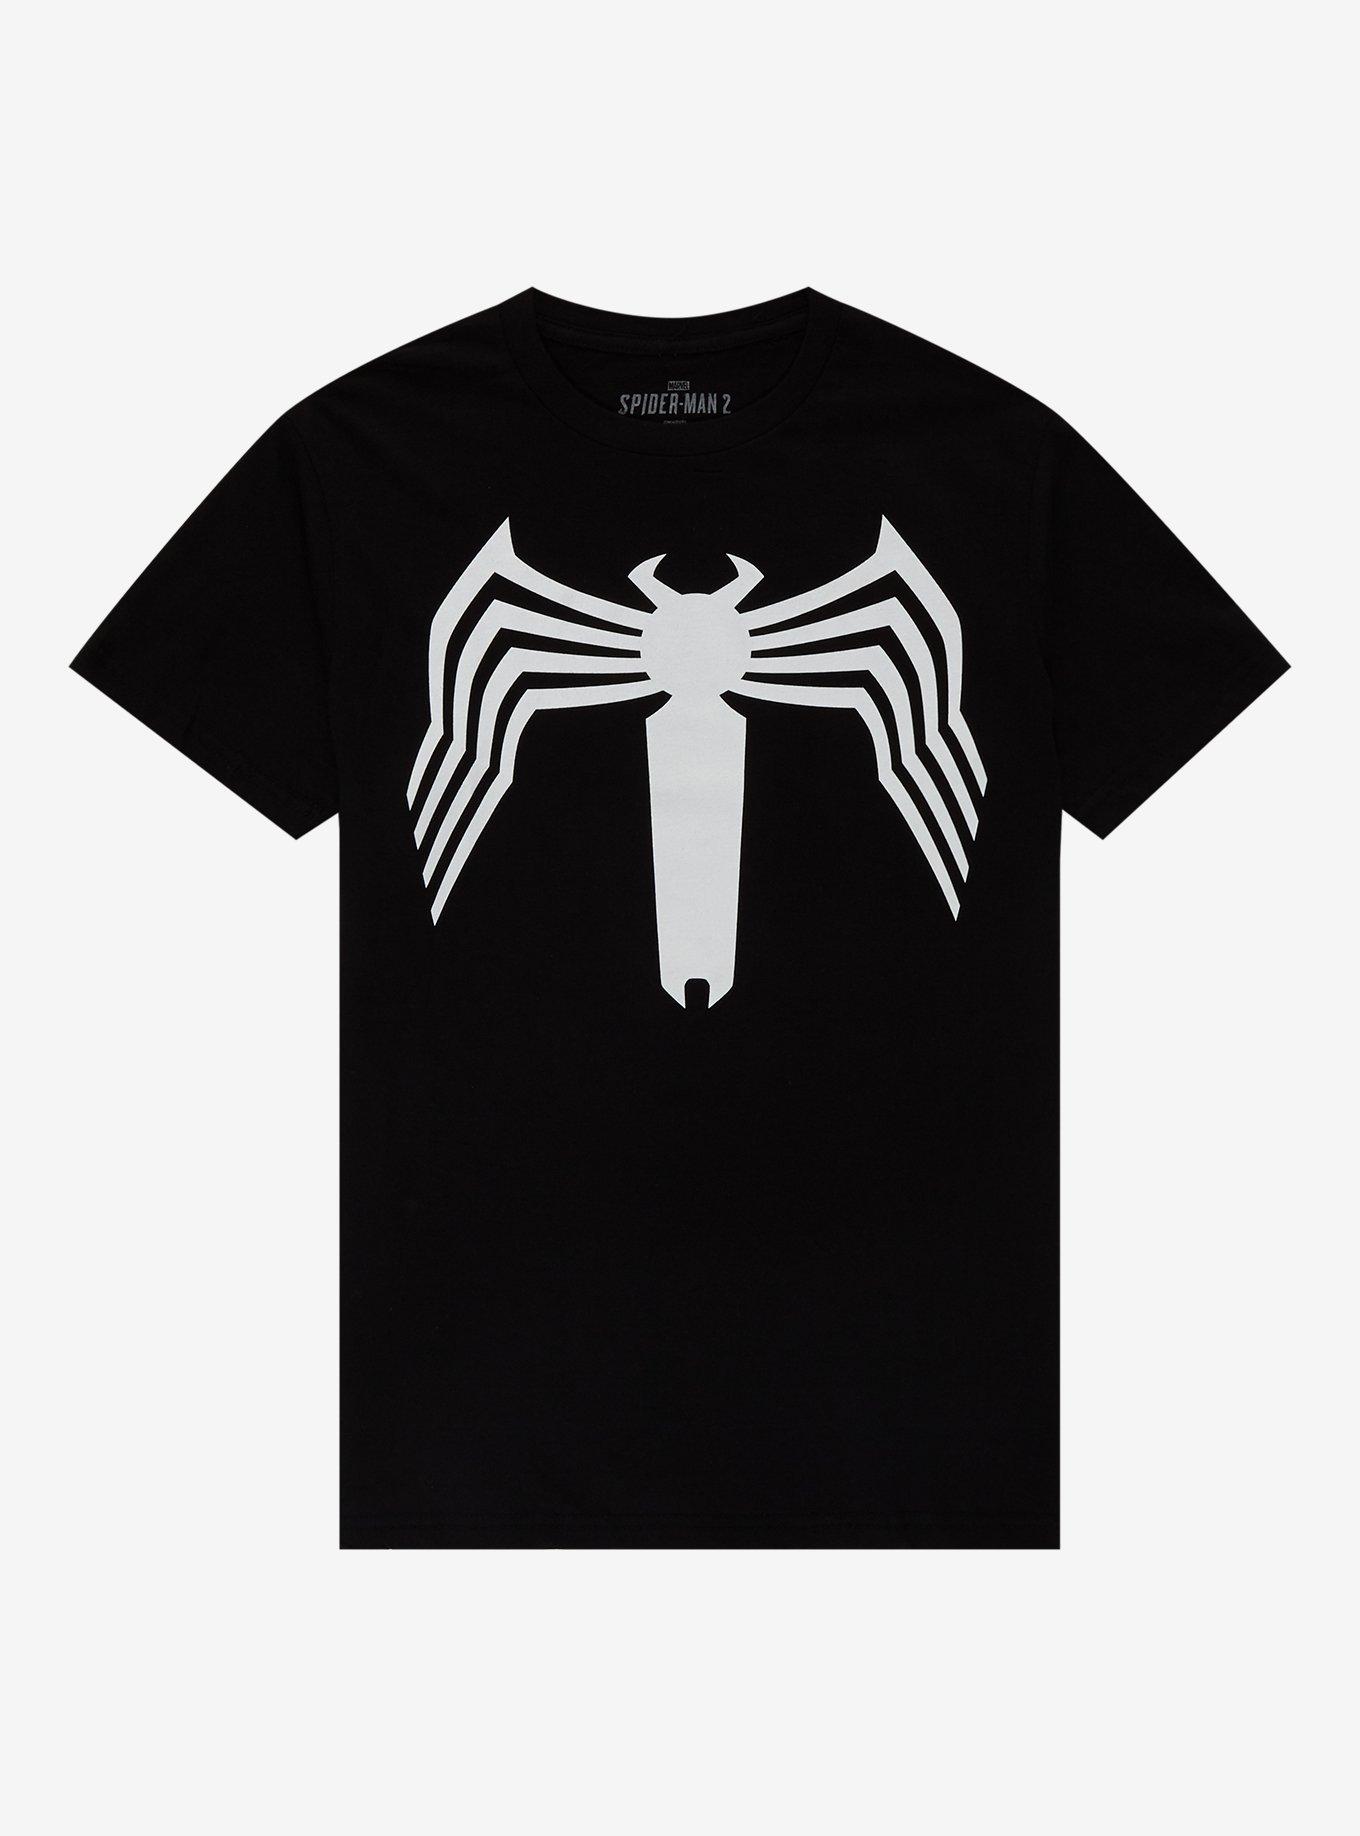 Marvel Spider-Man 2 Game Black Suit T-Shirt